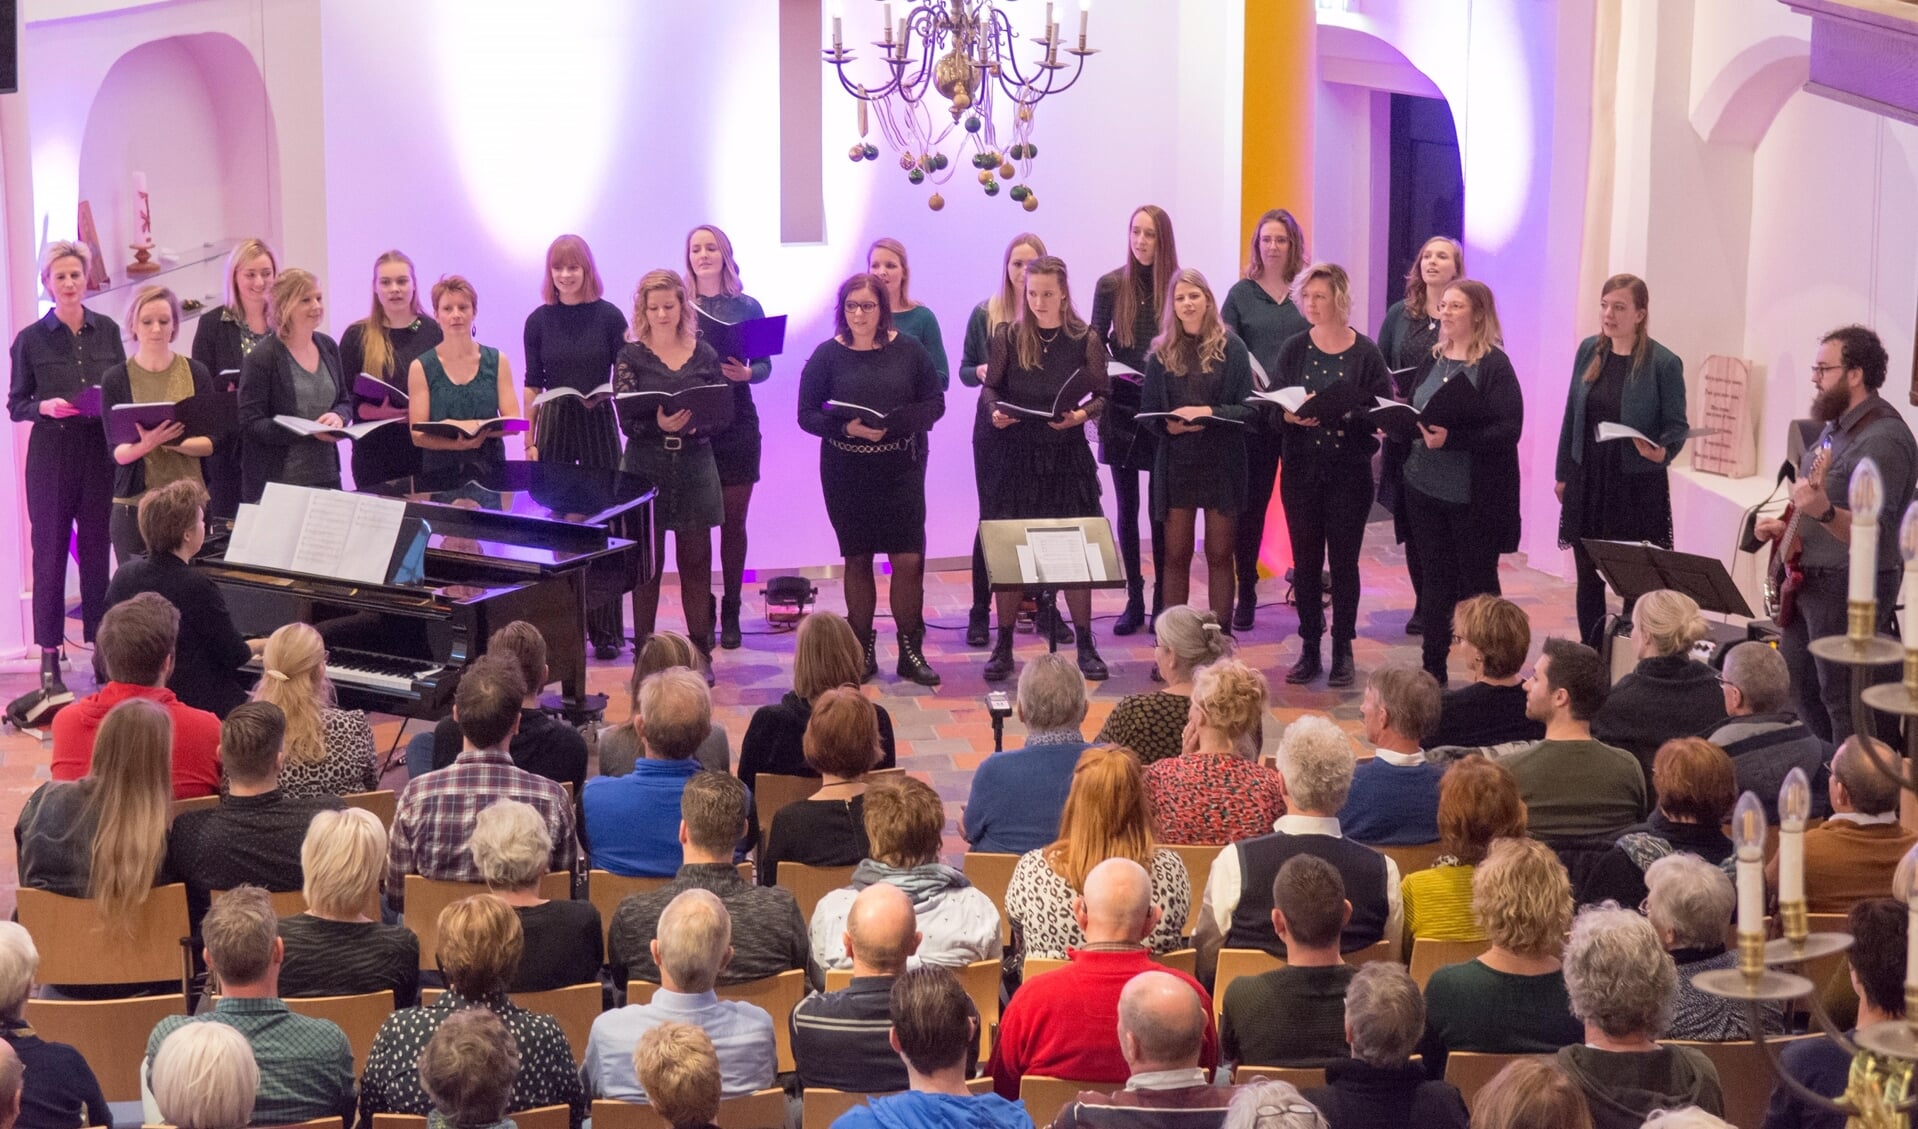 De projectgroep zong niet alleen met tweeëntwintig vrouwen tegelijk, maar wisselde in het programma af met zang in kleinere groepjes. Foto: Heike Kok. 